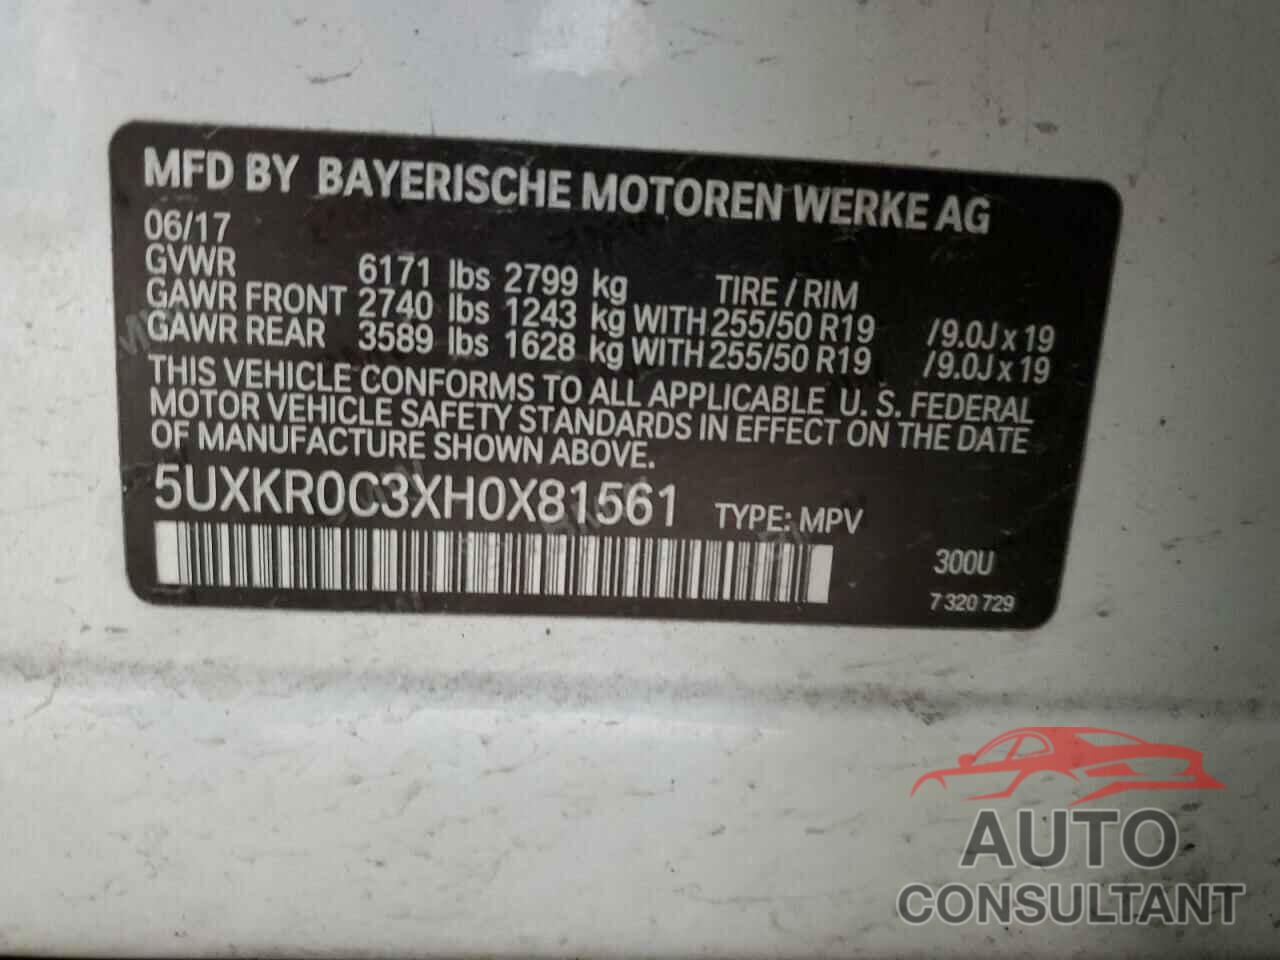 BMW X5 2017 - 5UXKR0C3XH0X81561